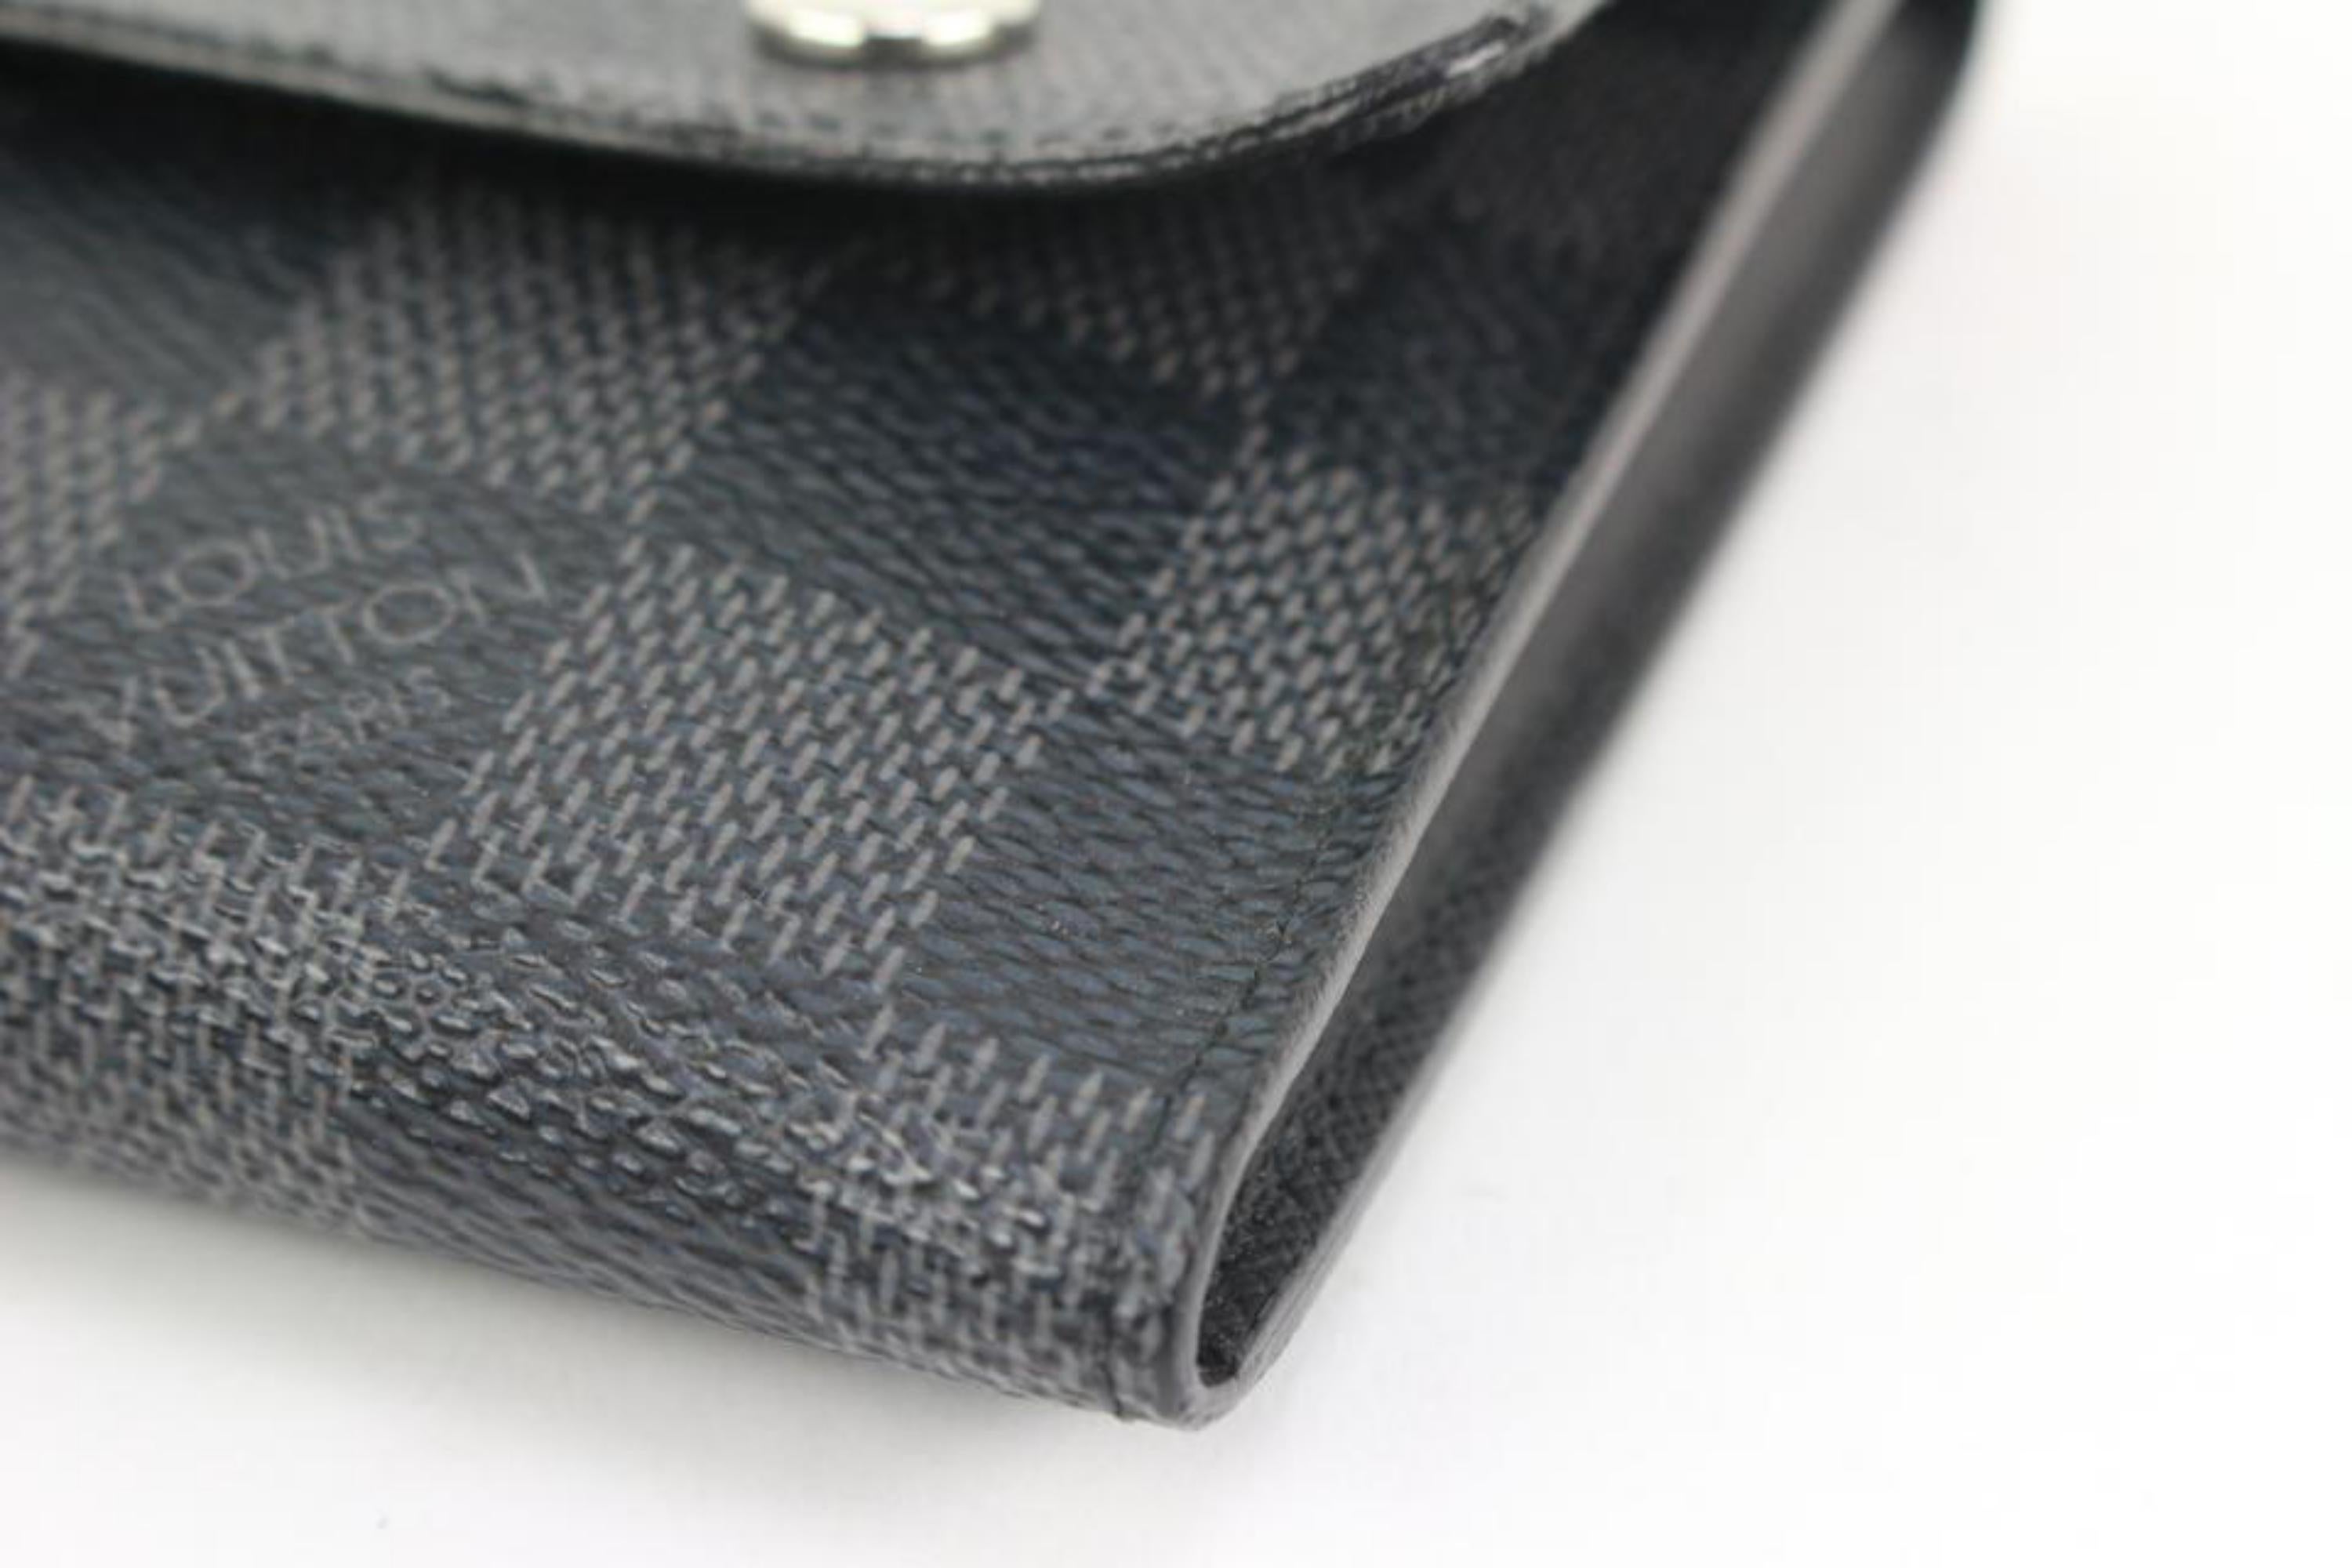 Louis Vuitton Black Damier Graphite Compact Snap Wallet 2lk318s For Sale 4